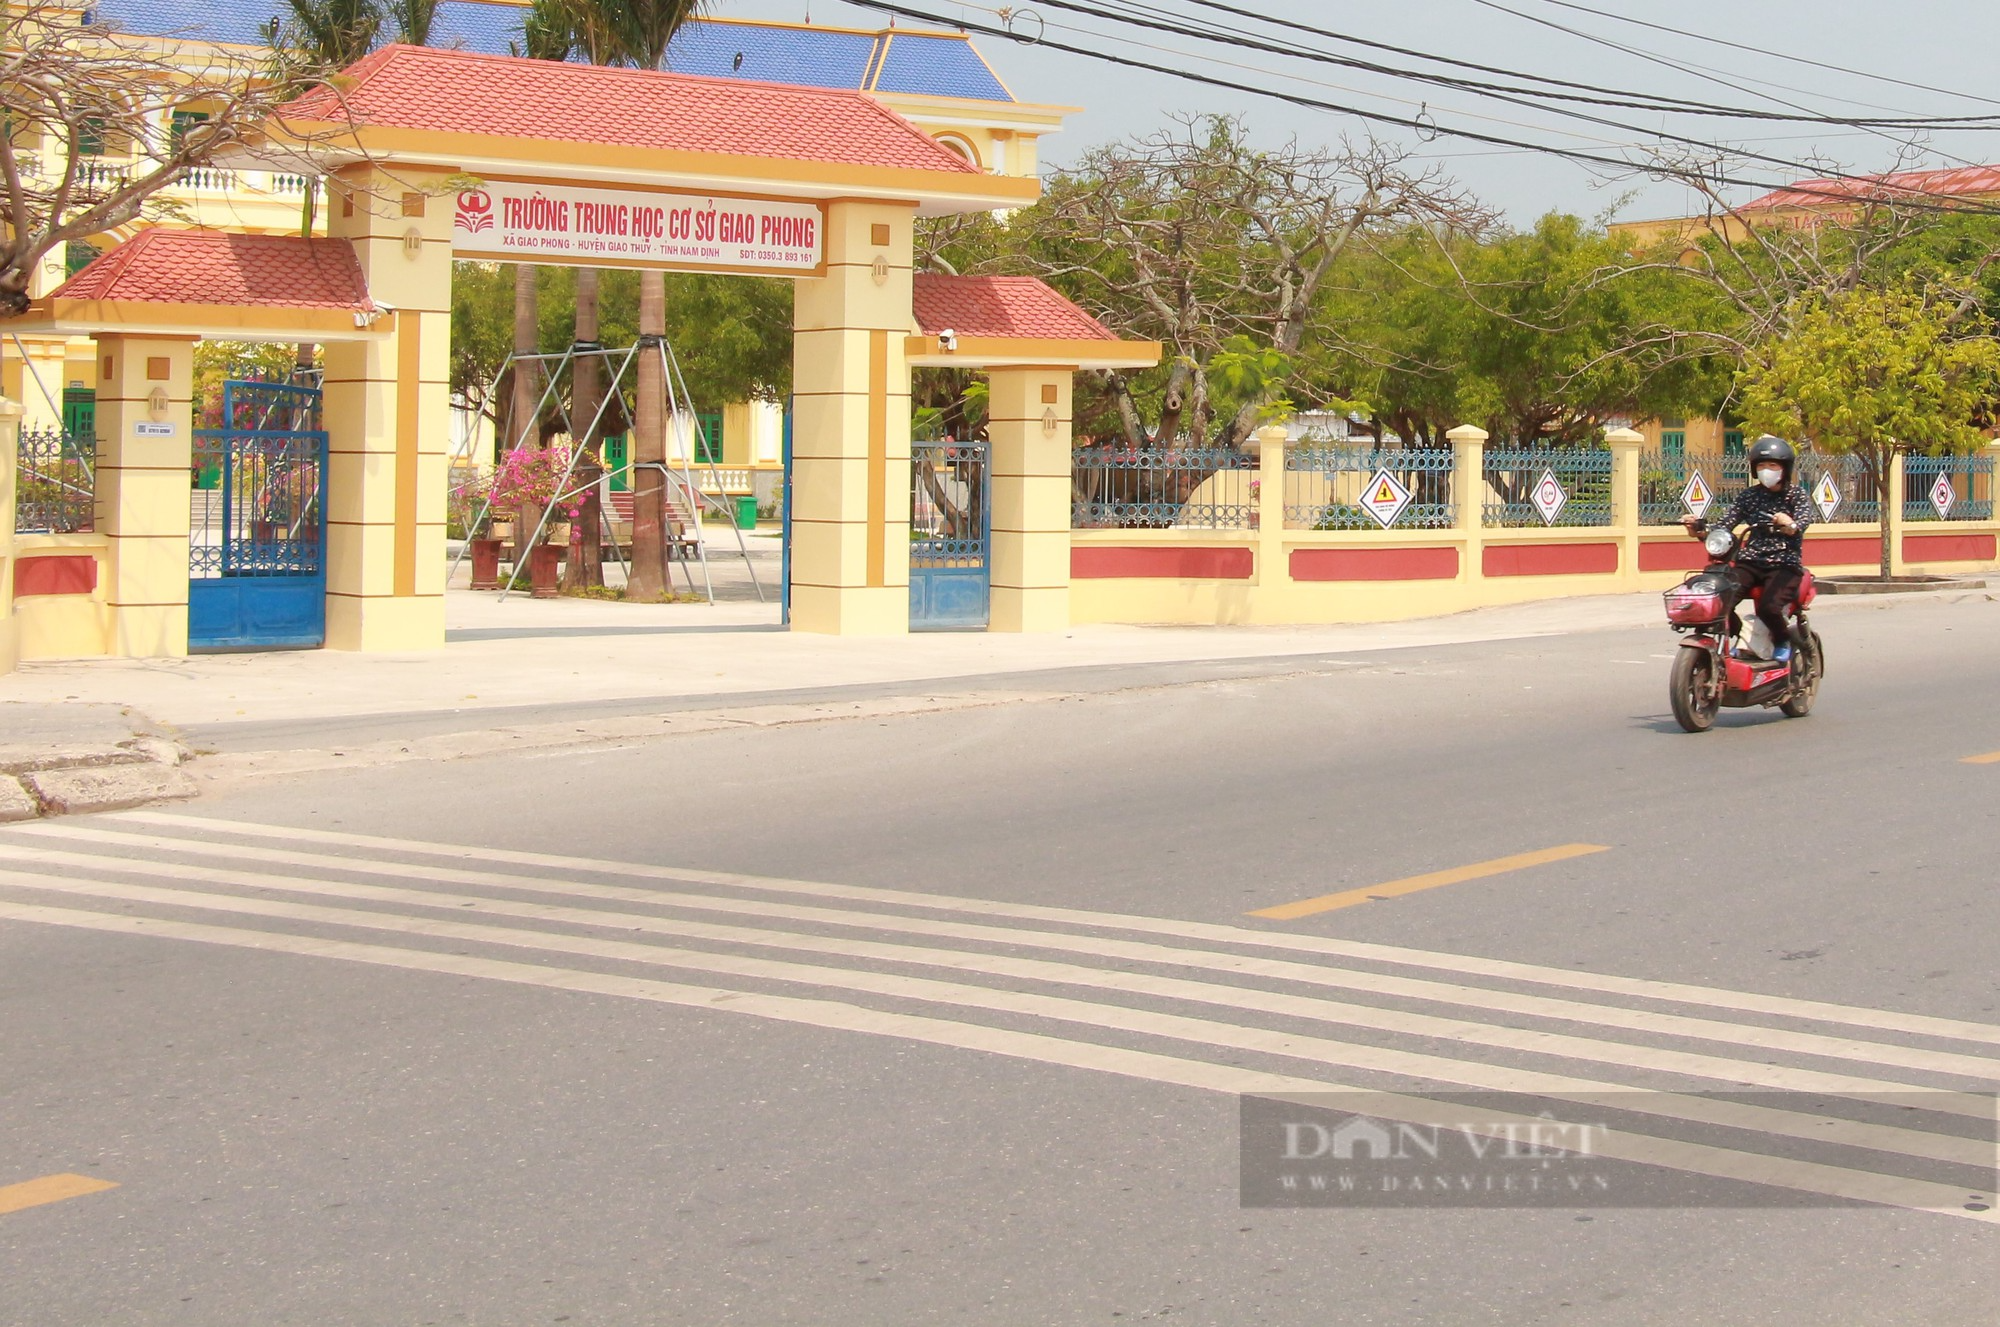 Về xã nông thôn mới kiểu mẫu đầu tiên tỉnh Nam Định, đường làng, ngõ xóm thông suốt, hai bên đường hàng cau xanh mướt - Ảnh 6.